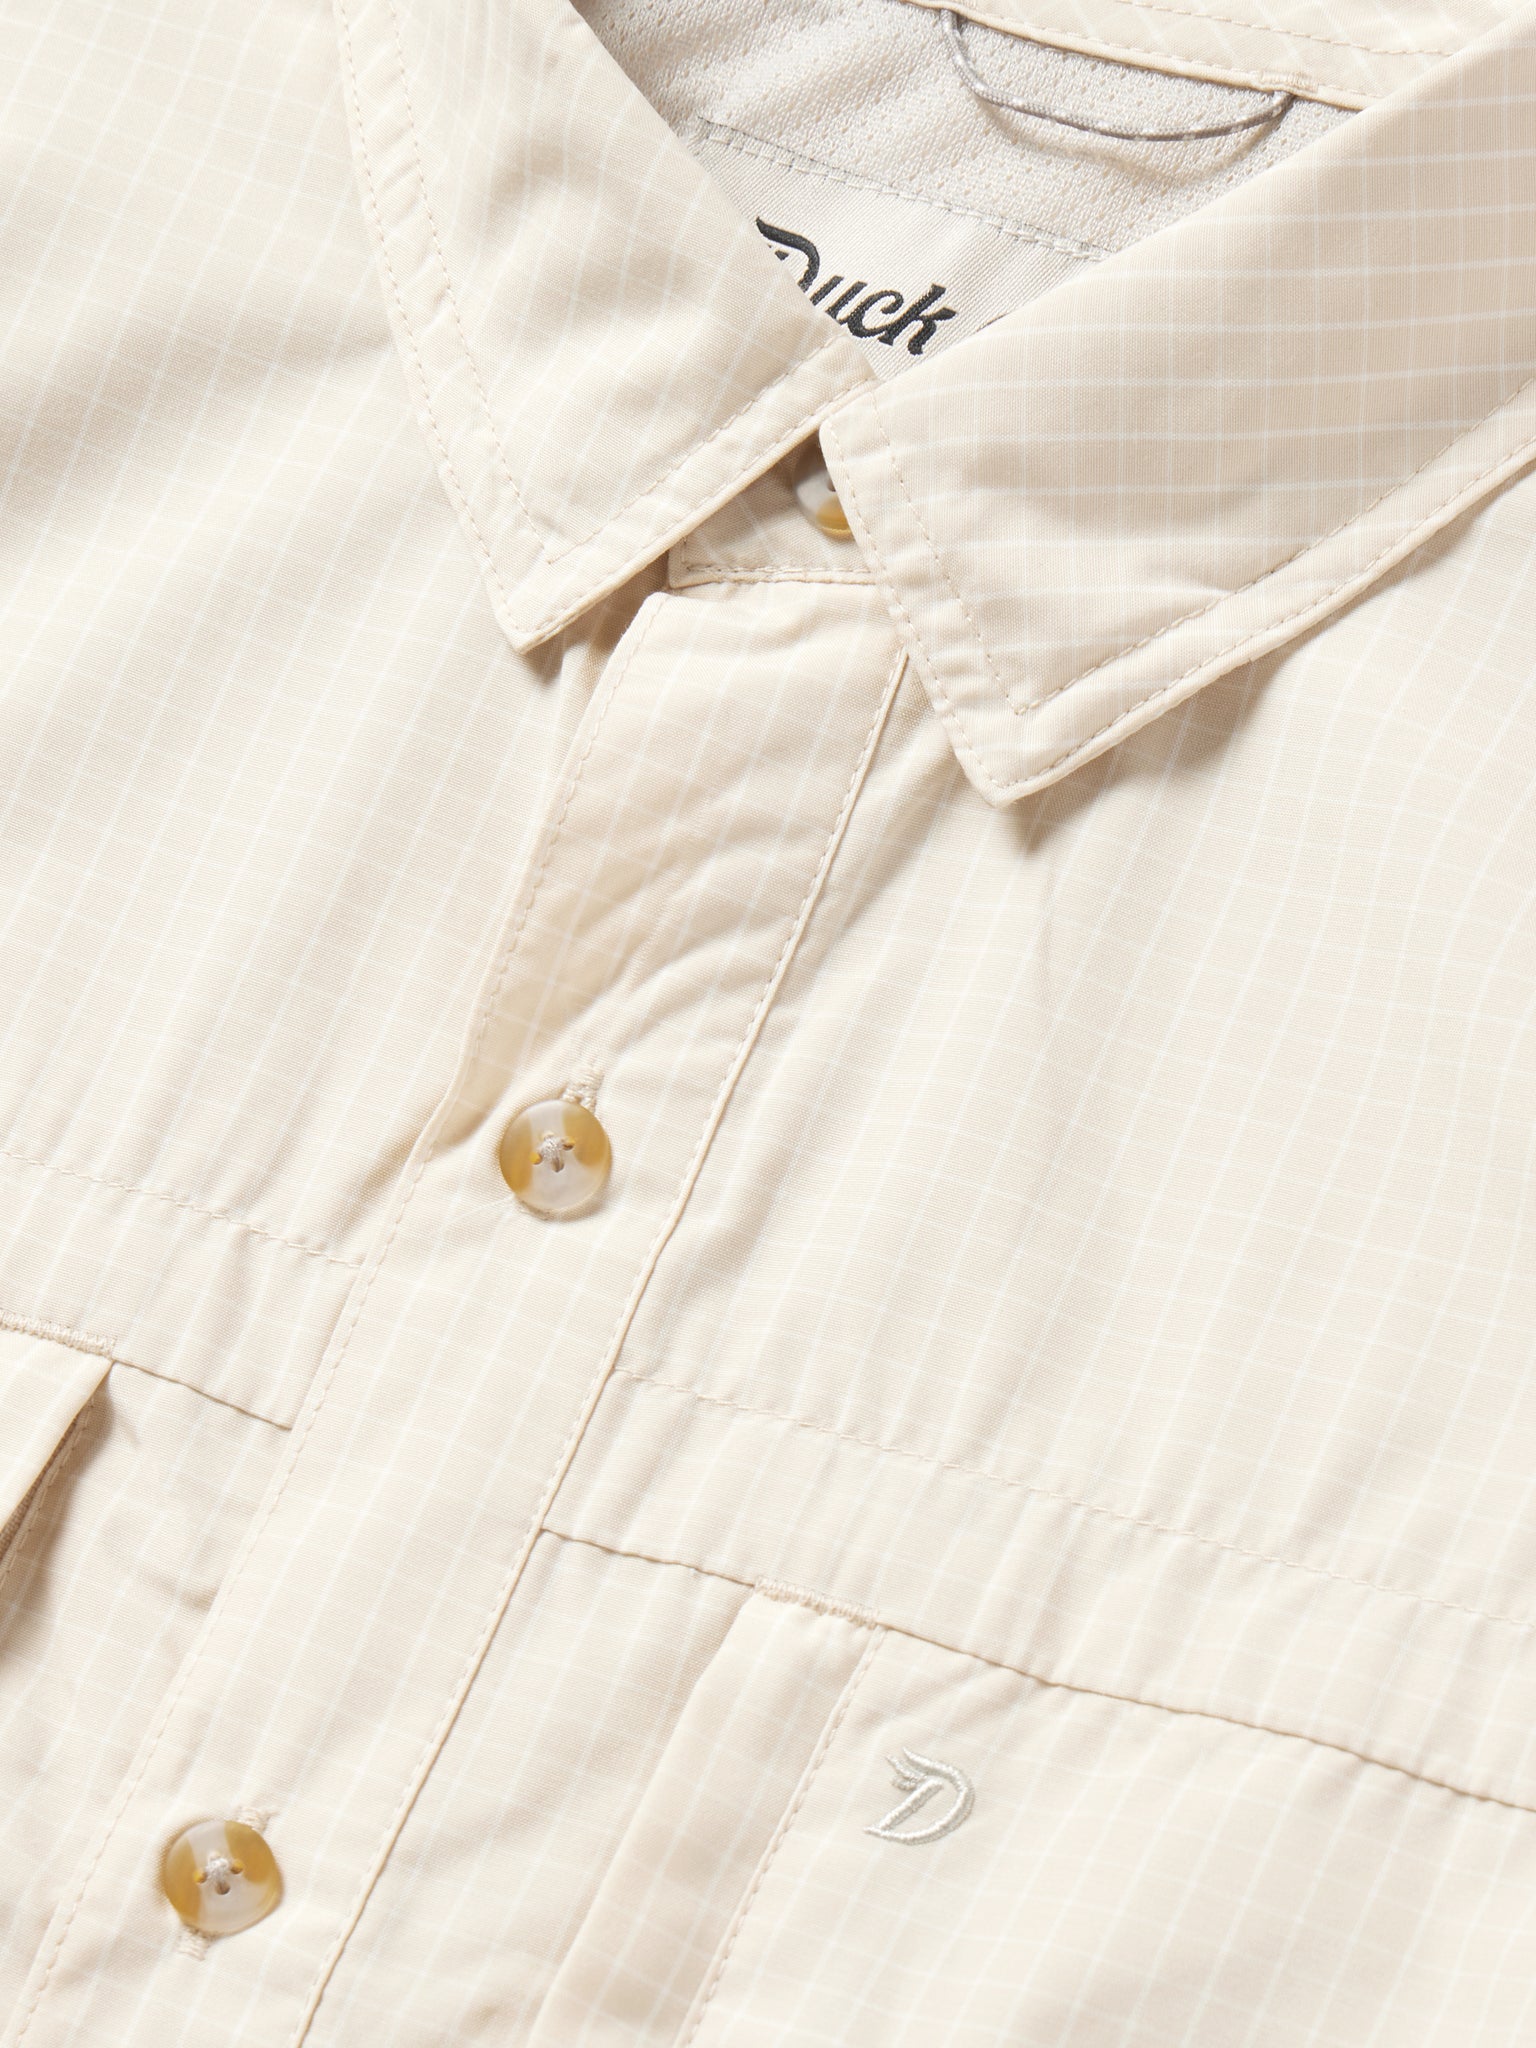 Helm Shirt Short Sleeve - Sanddollar Grid